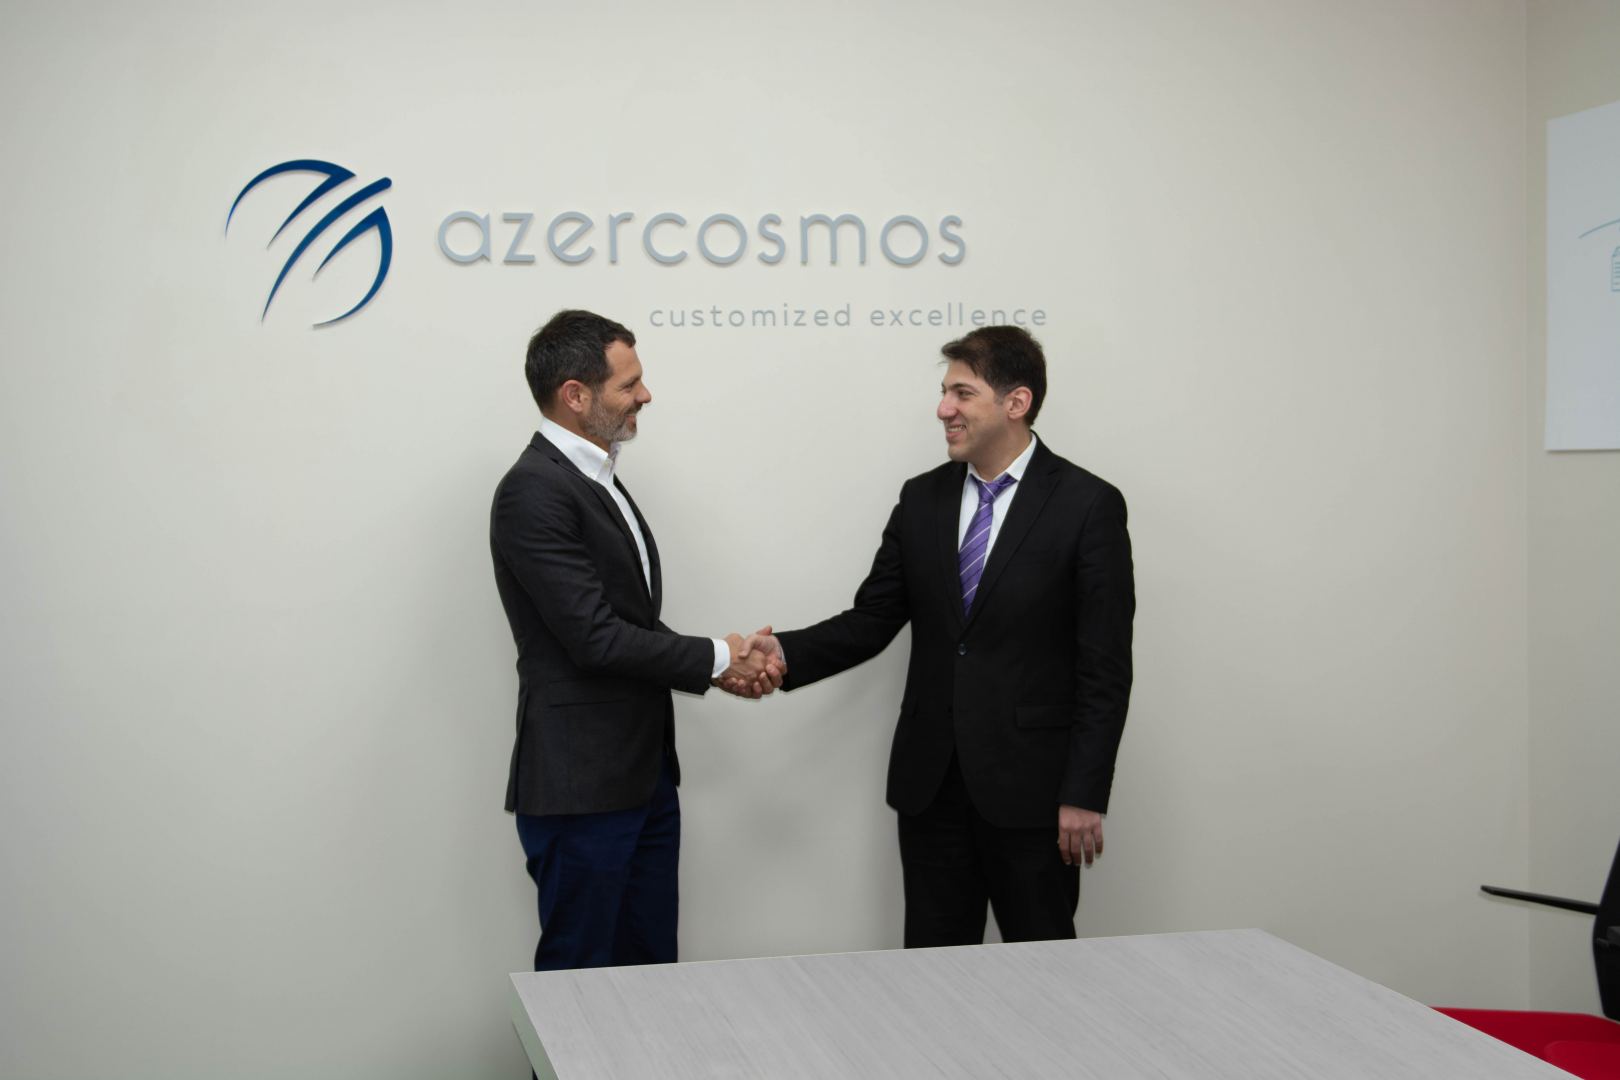 Azərkosmos İsrailin “Spacecom” peyk operatoru ilə əməkdaşlıq müqaviləsi imzalayıb (FOTO)